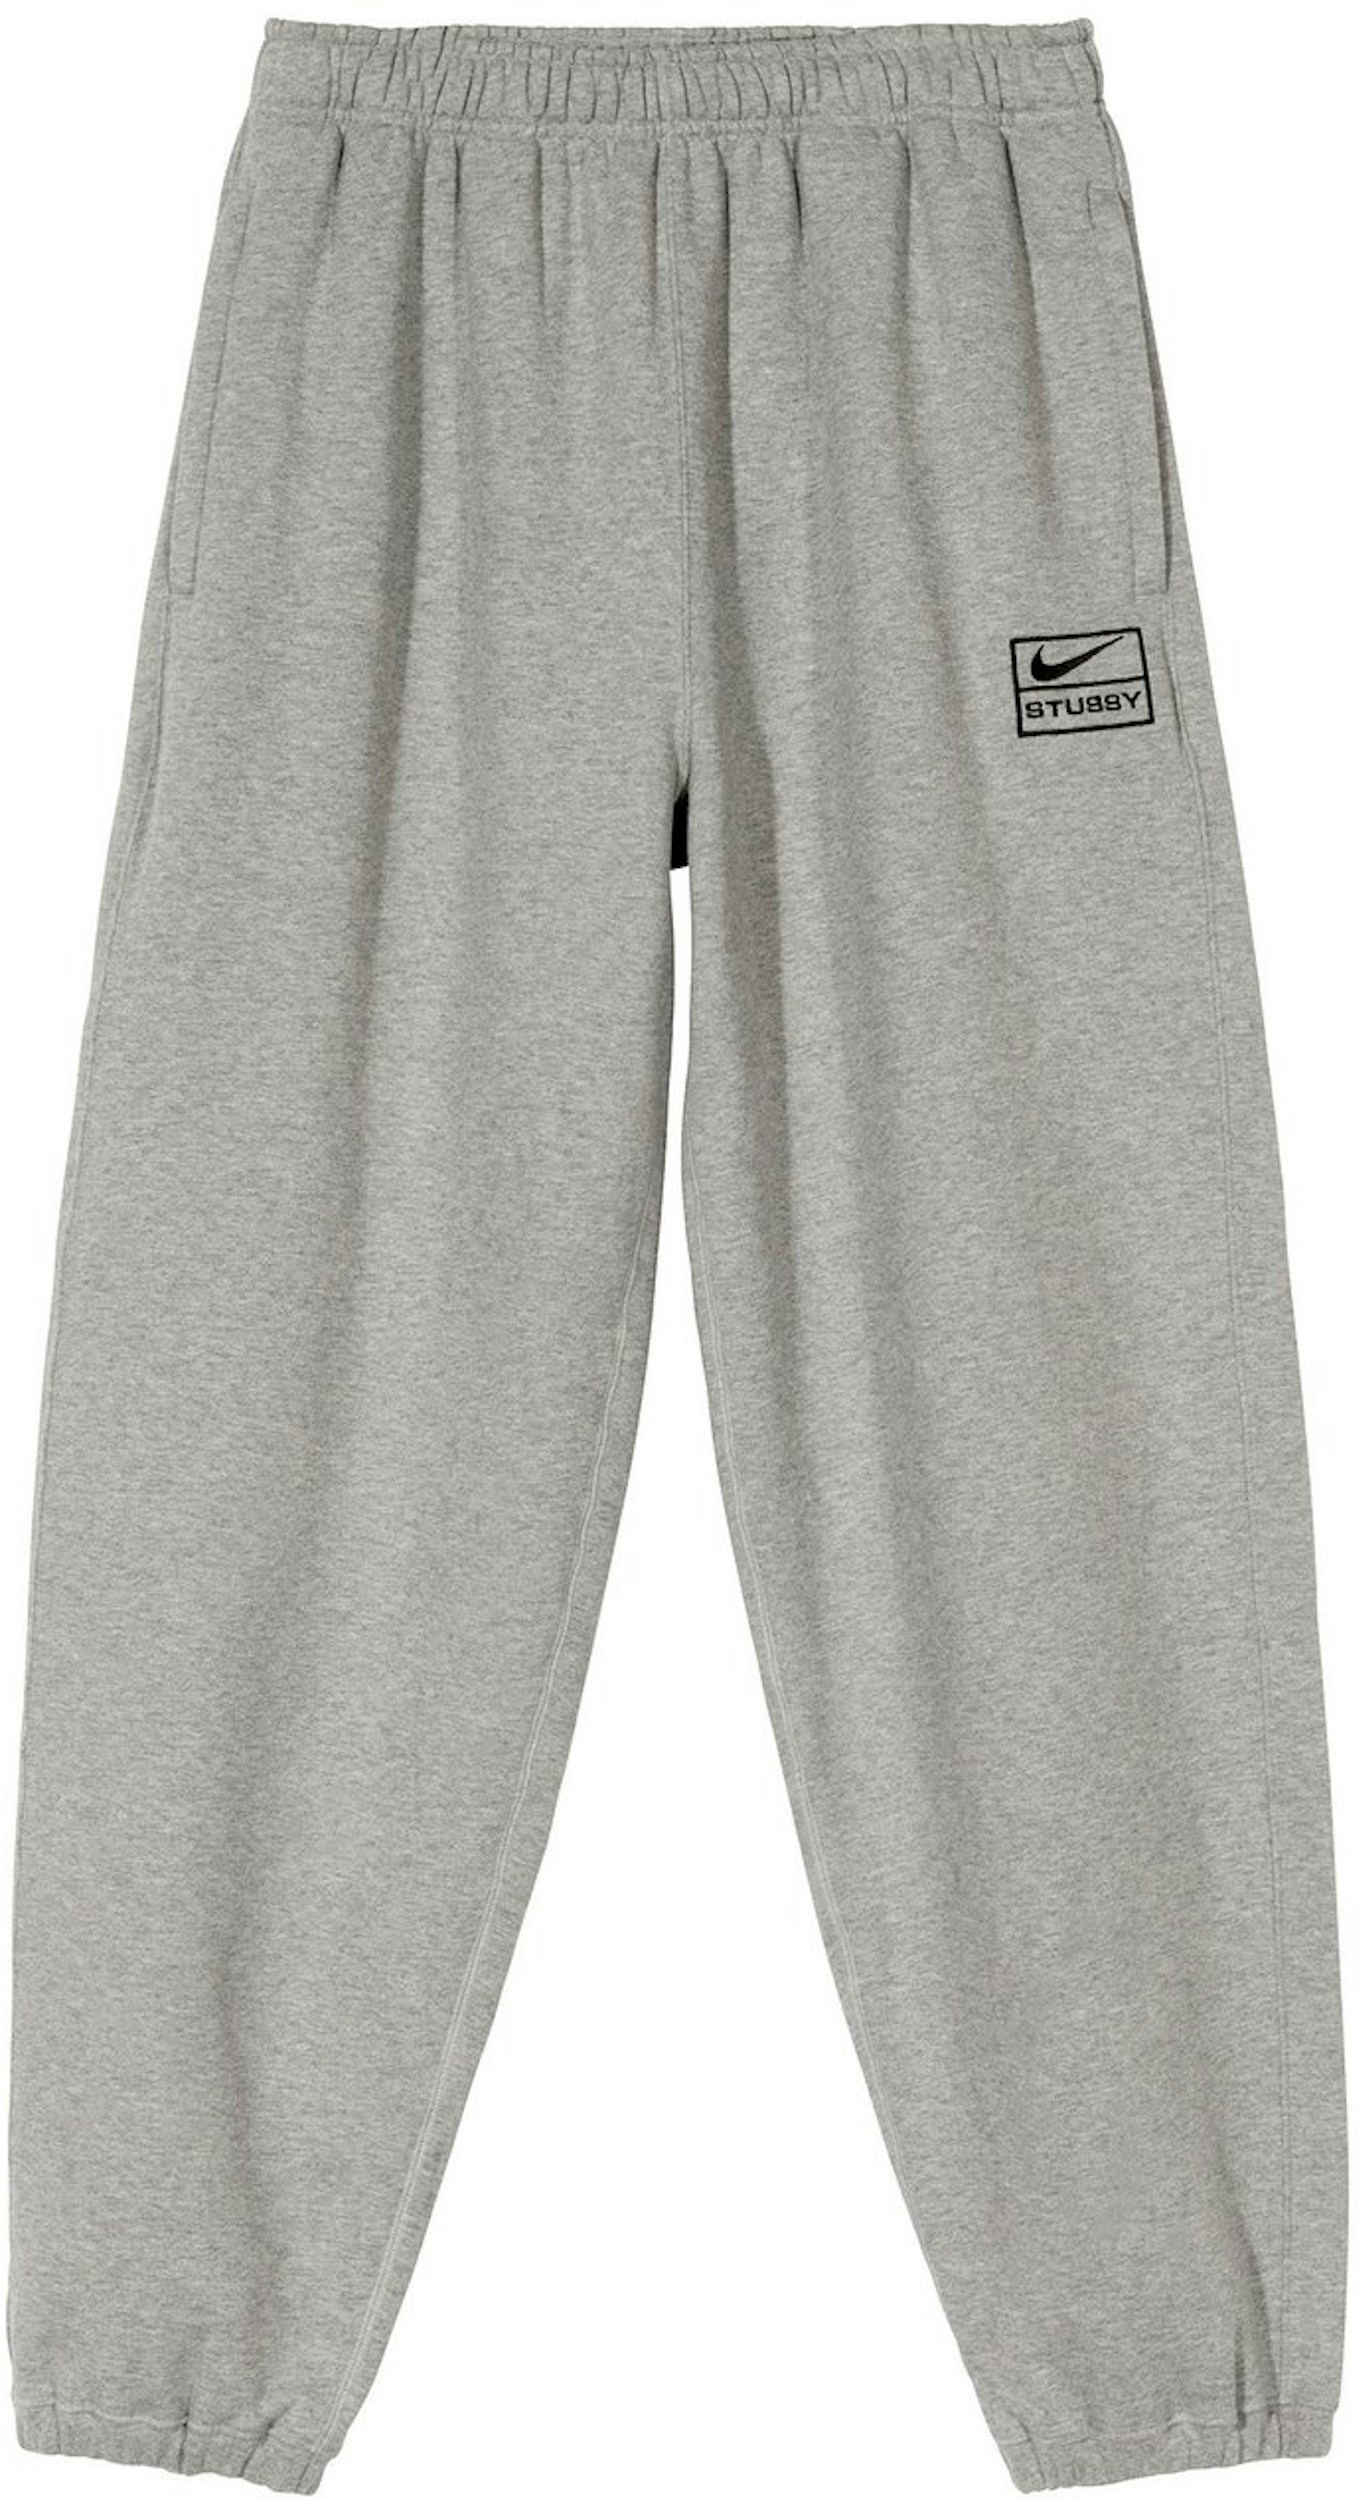 Nike x Stussy NRG BR Fleece Pant Gray - SS20